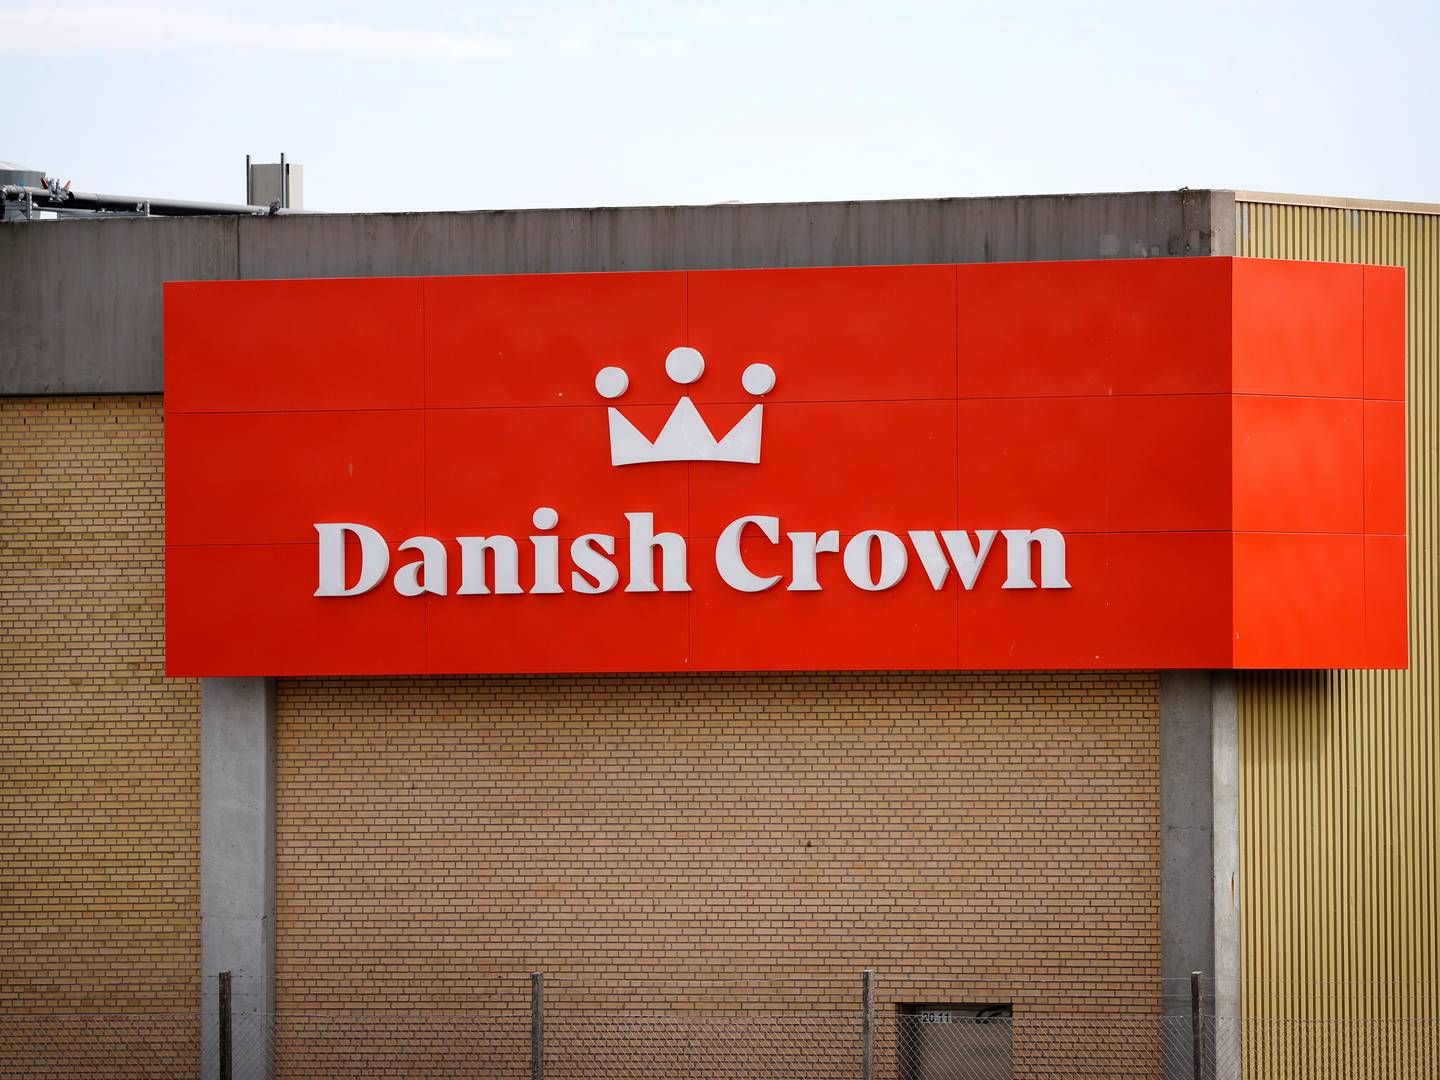 Det andelsejede slagteri Danish Crown fik sidste uge ny bestyrelse. Arkivfoto.